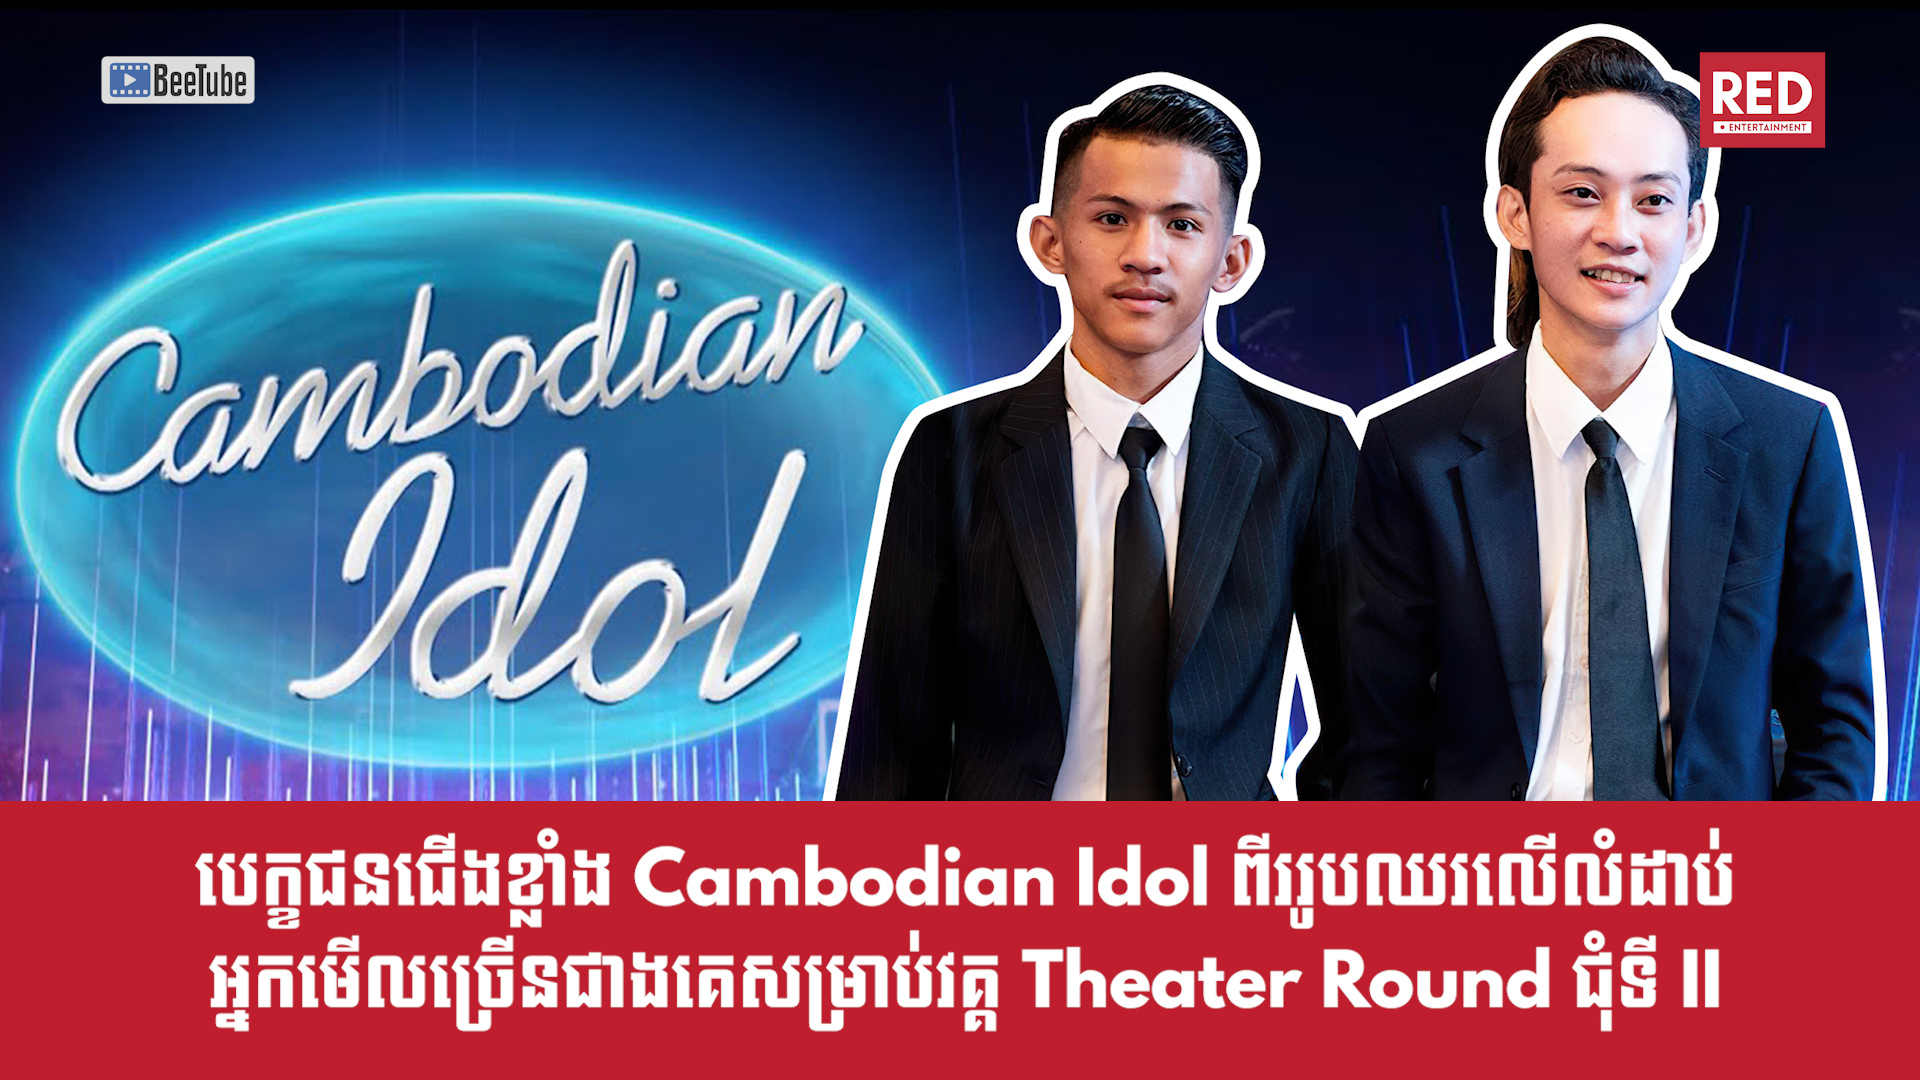 បេក្ខជនជើងខ្លាំង Cambodian Idol ពីររូបឈរលើលំដាប់អ្នកមើលច្រើនជាងគេសម្រាប់វគ្គ Theater Round ជុំទី II